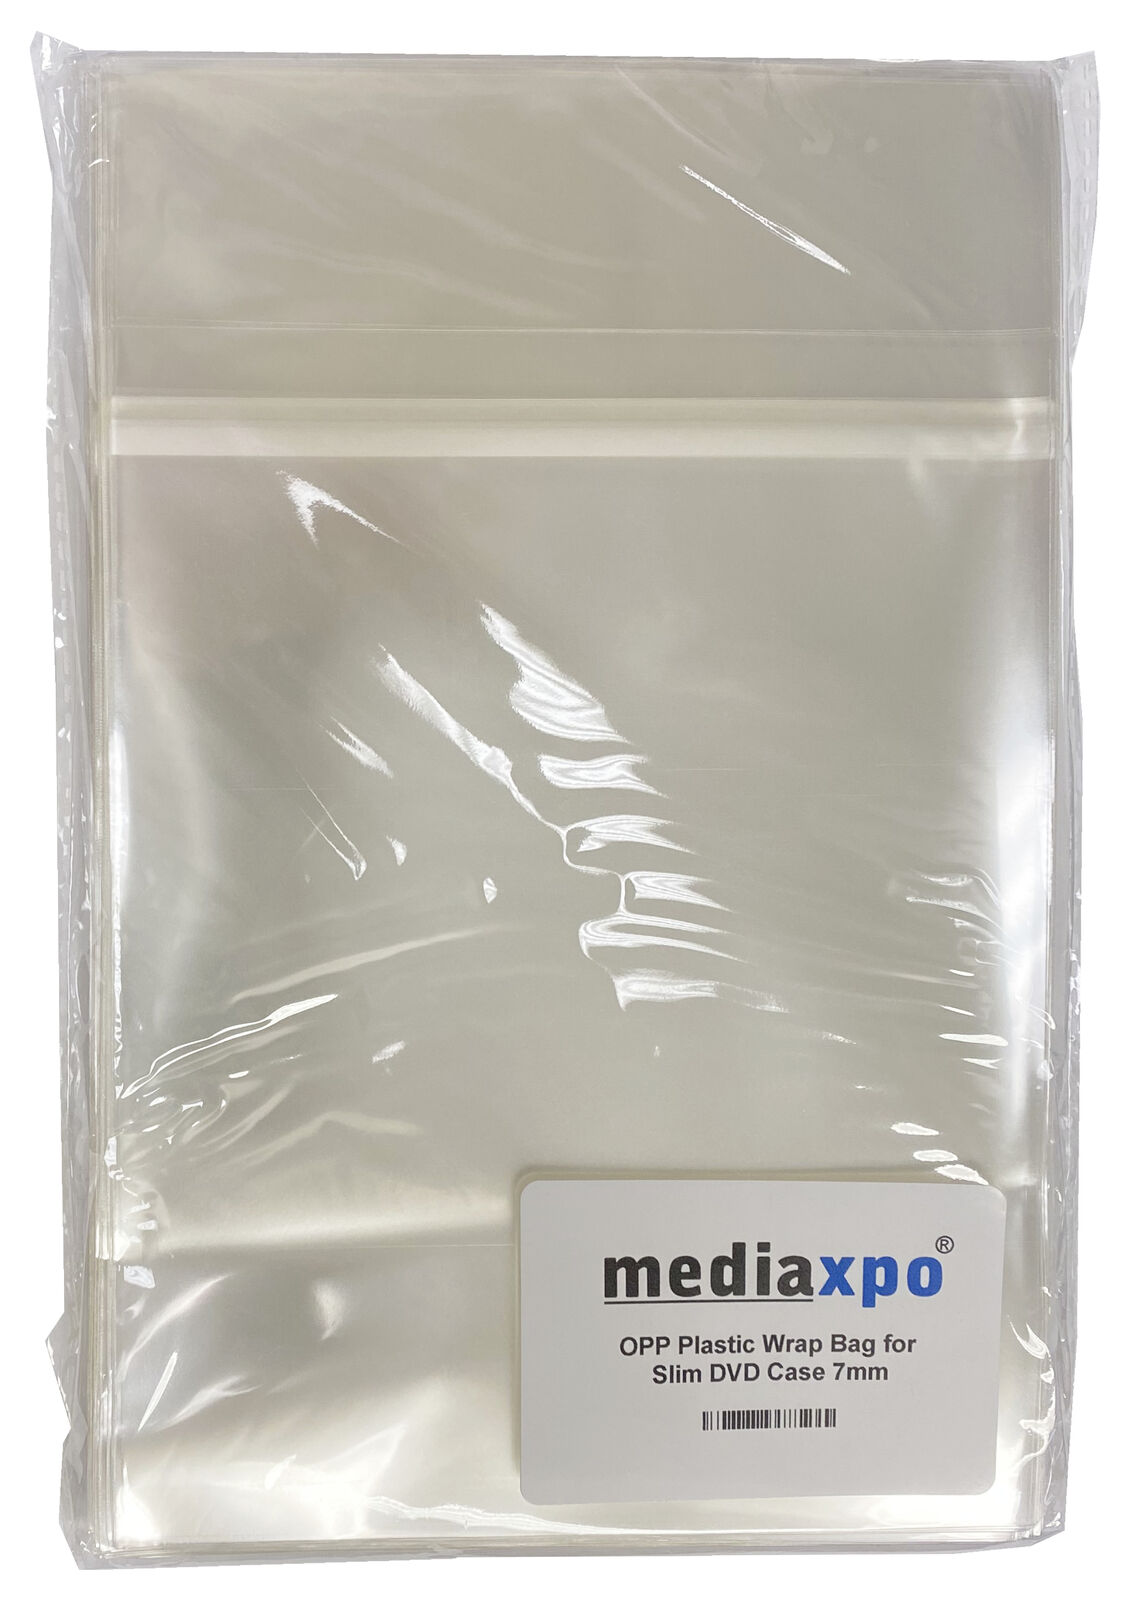 OPP Plastic Wrap Bag for Slim DVD Case 7mm Lot